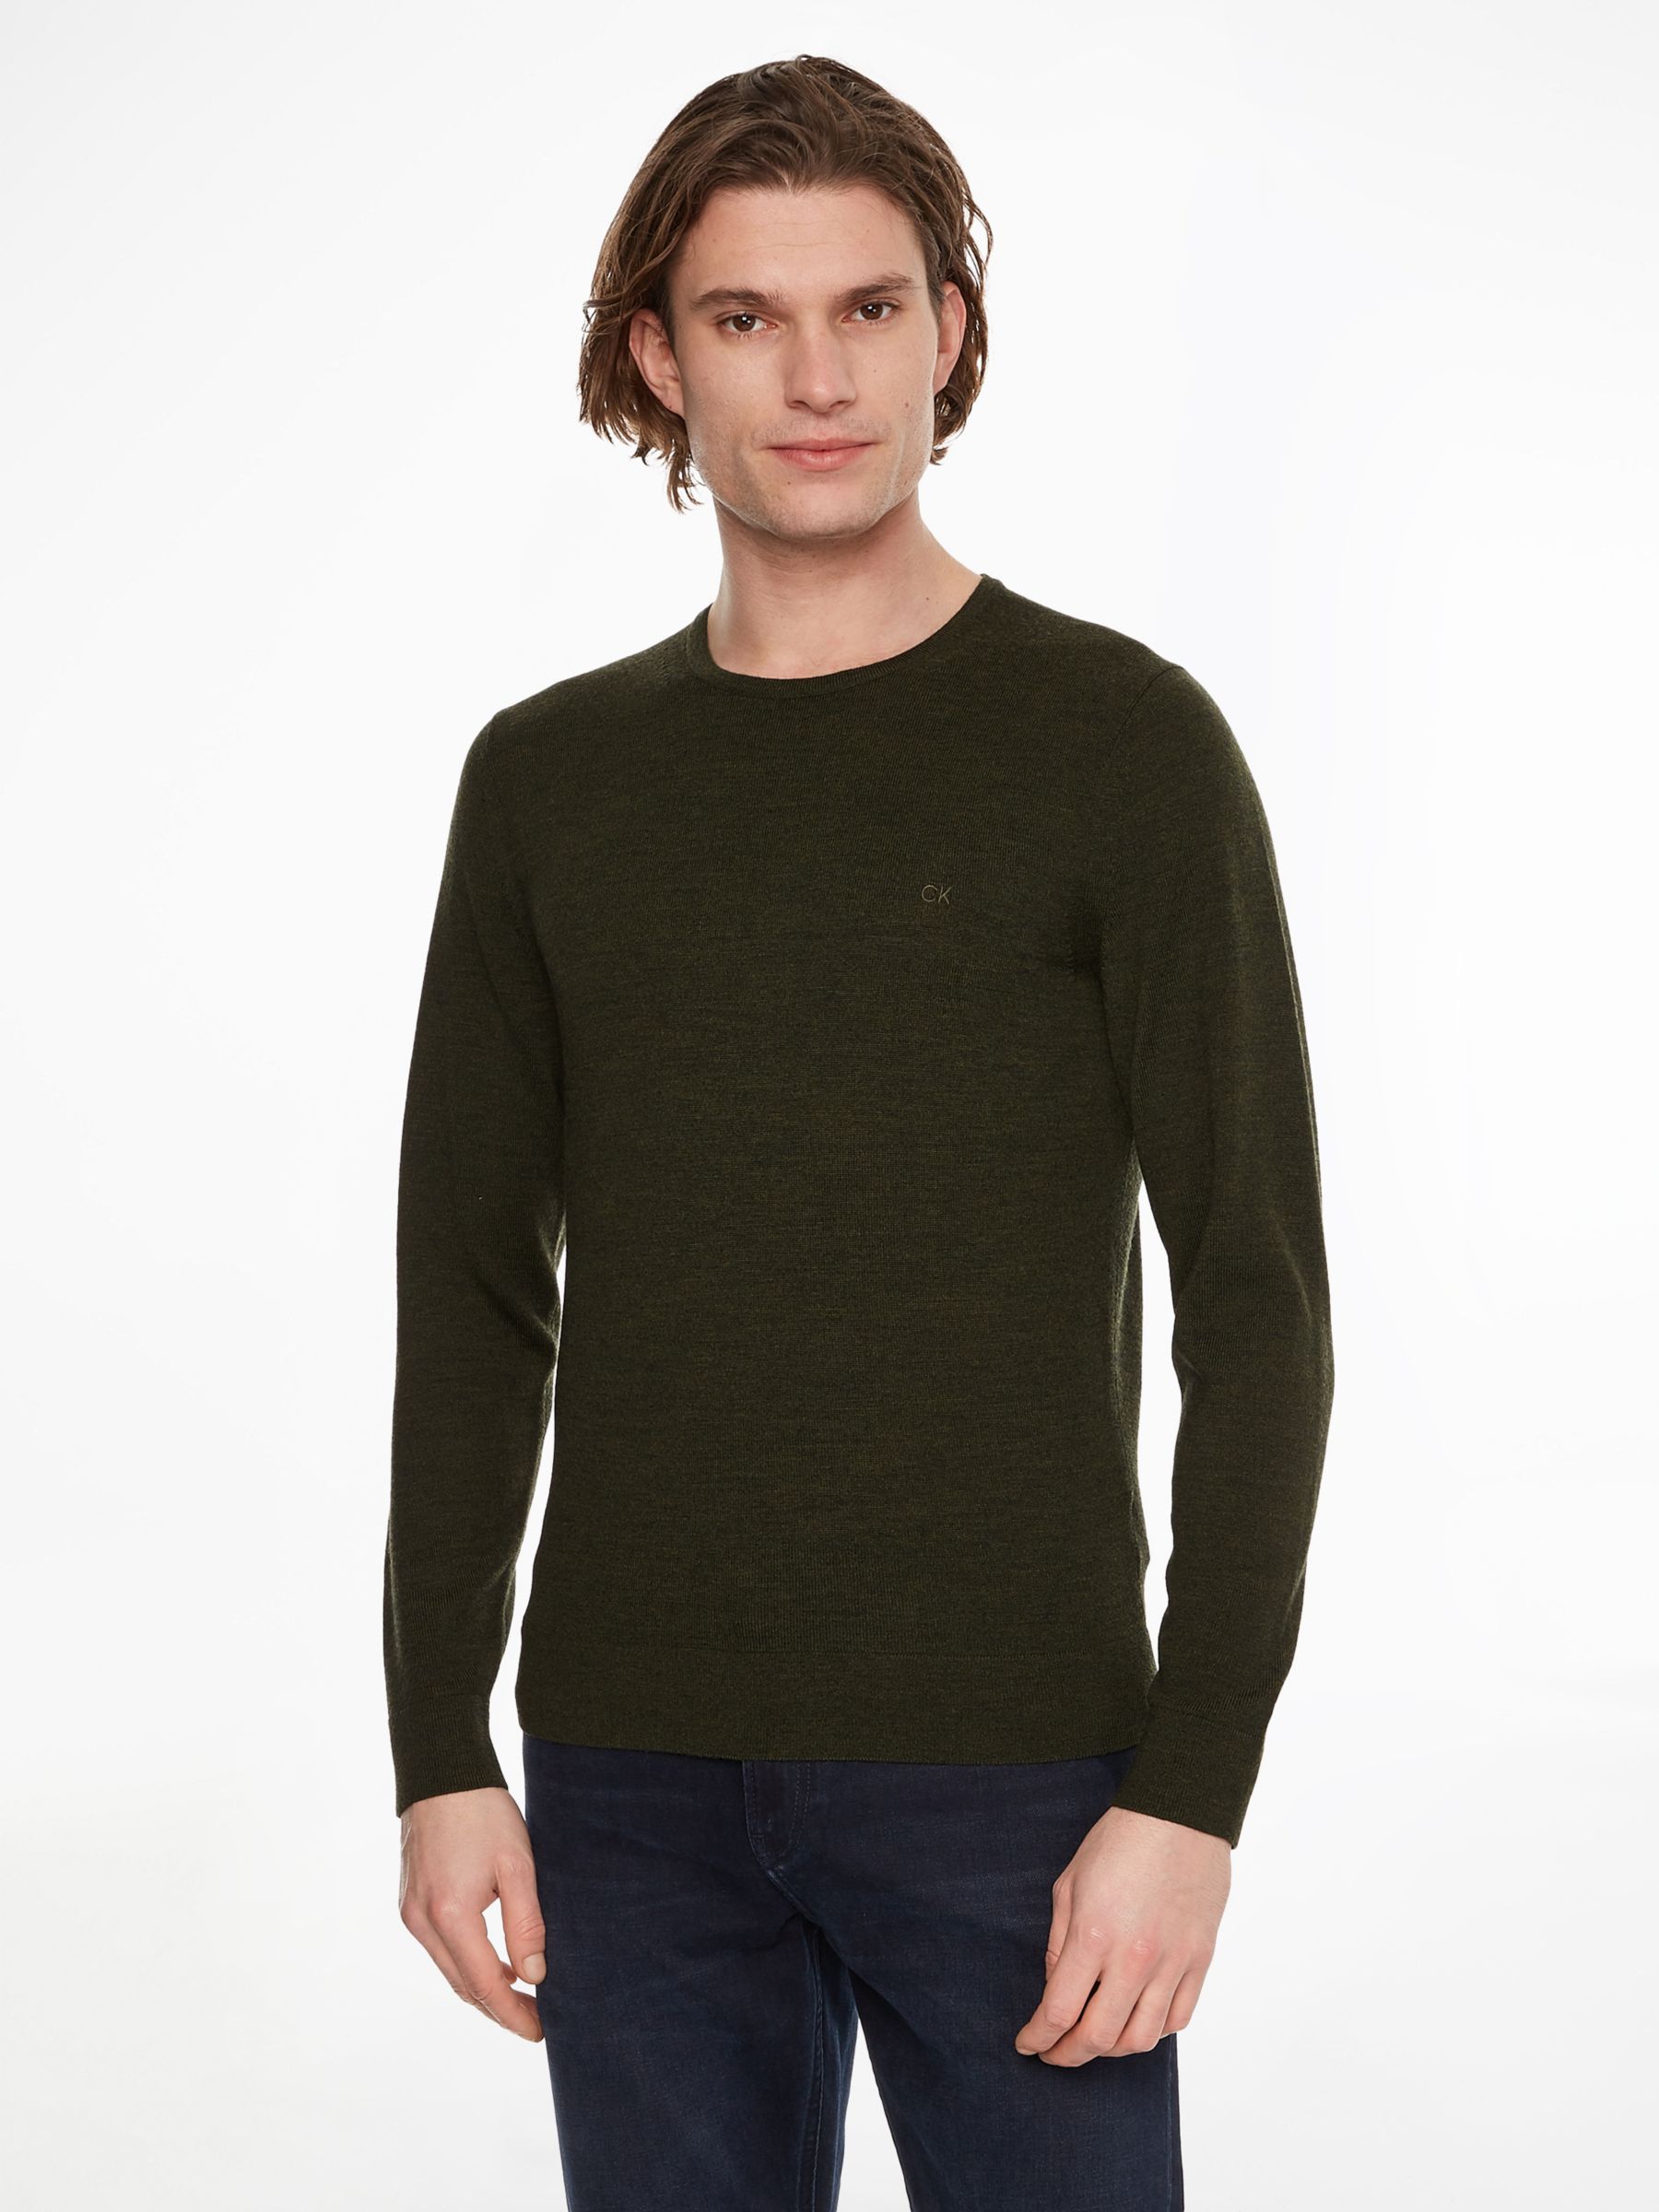 Calvin Klein Superior Wool Jumper, Dark Olive, XS